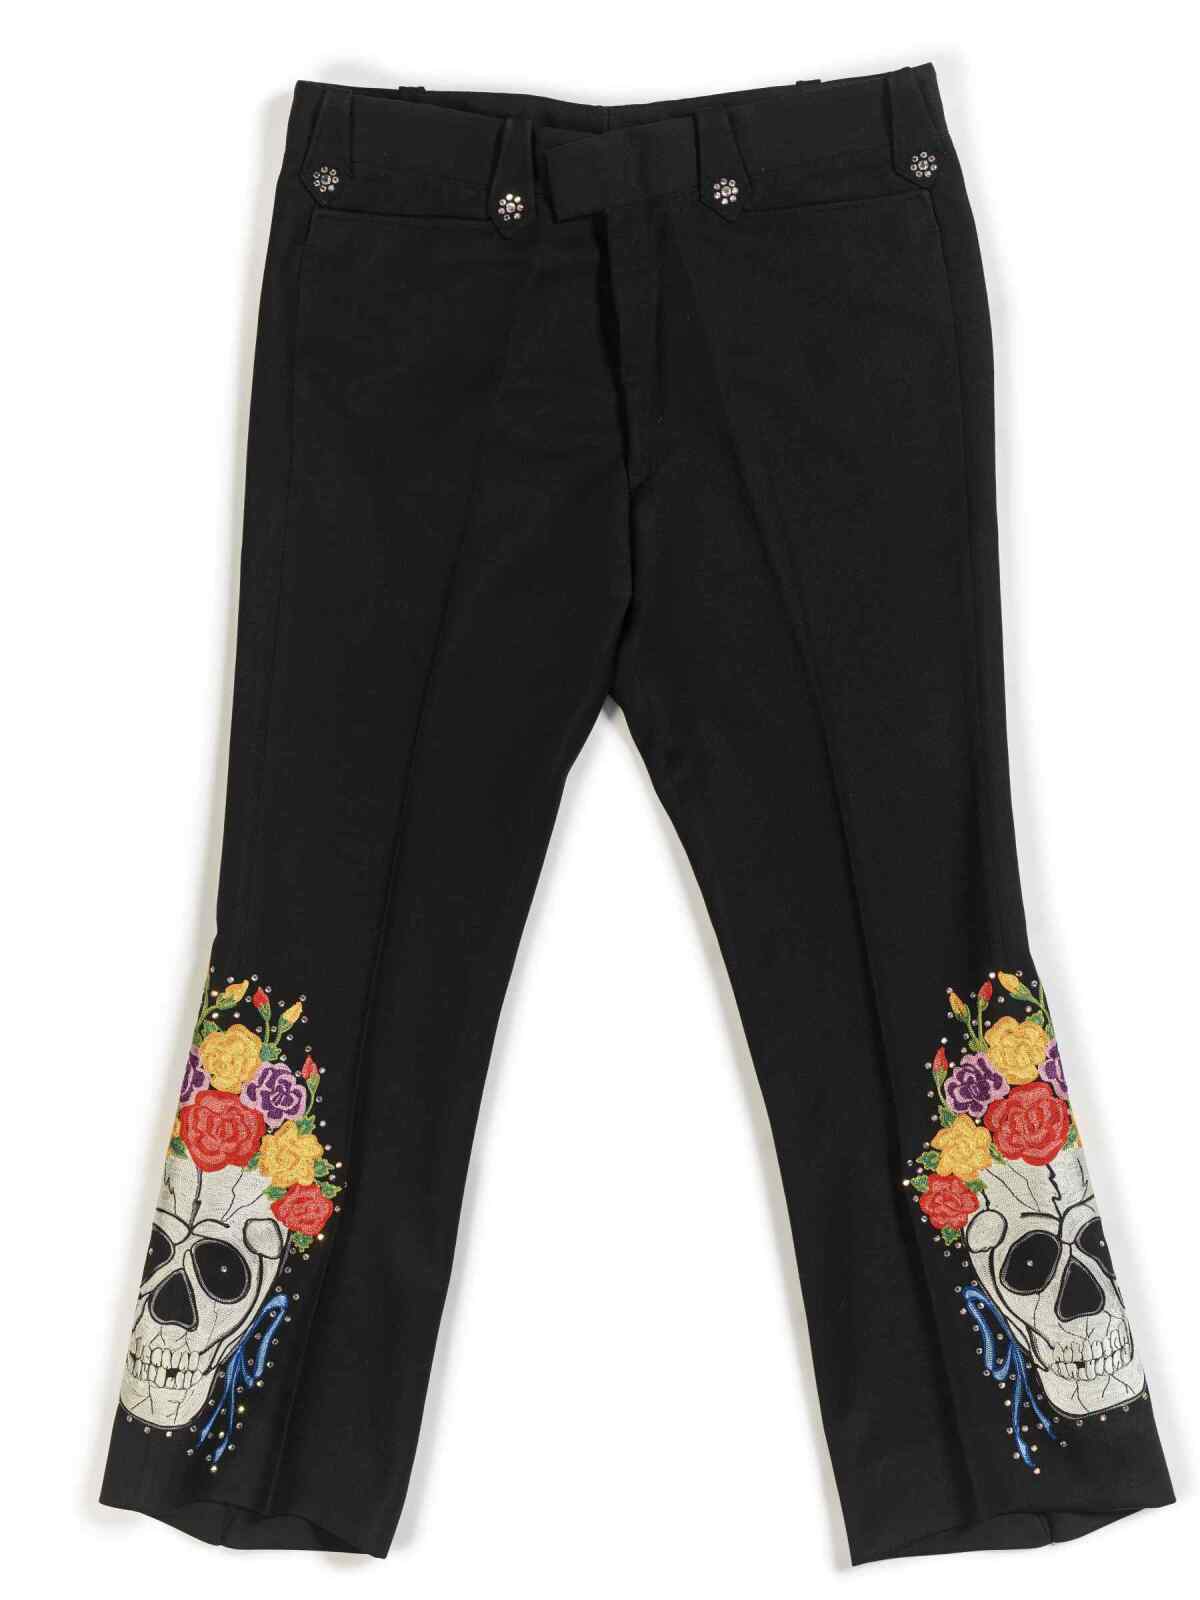 Skull-embroidered custom pants. 